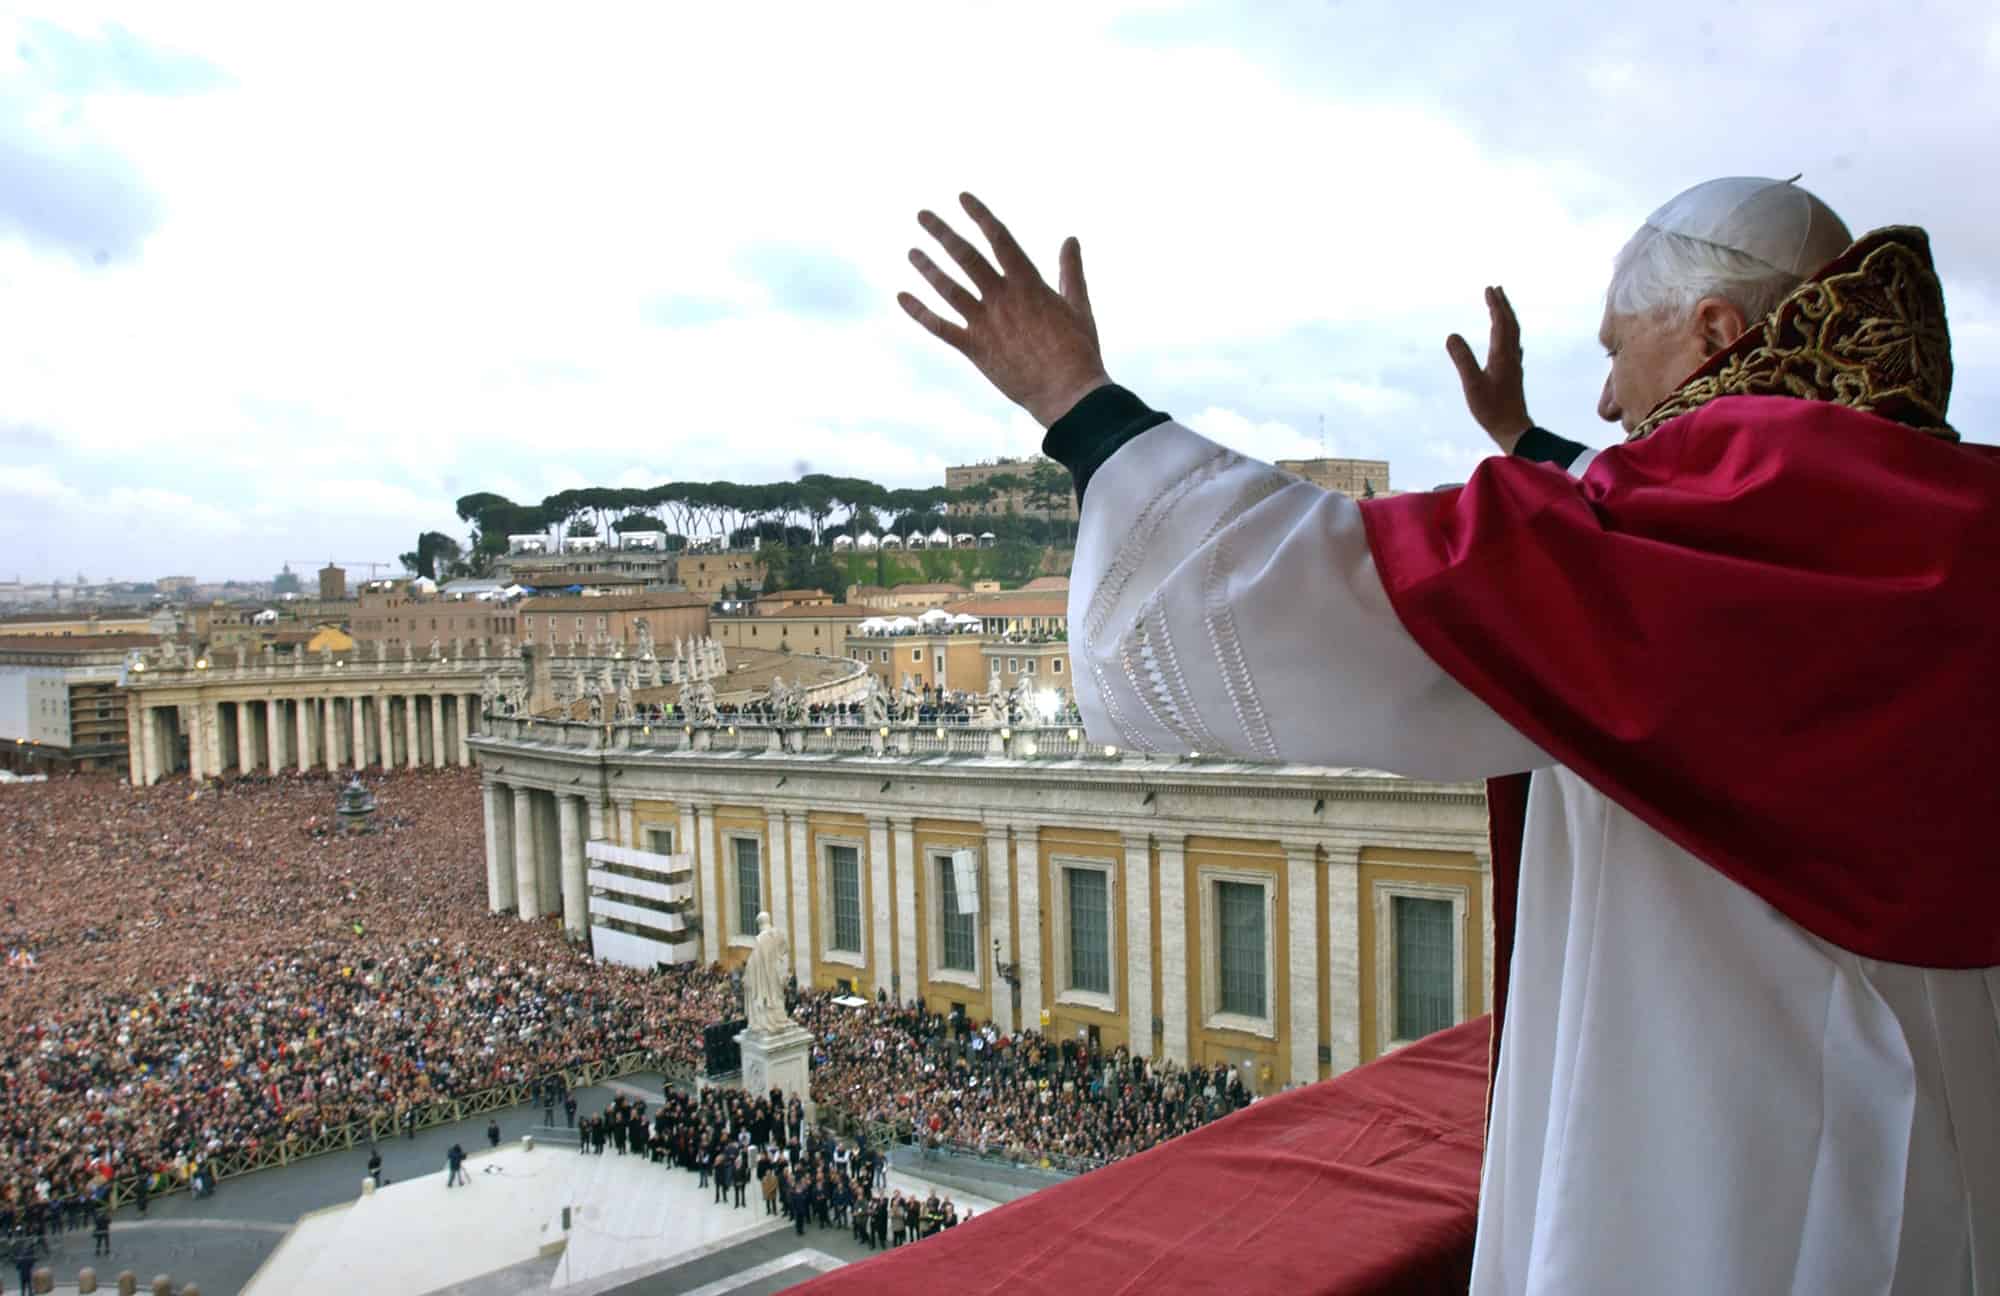 El Papa Benedicto XVI, Cardenal Joseph Ratzinger de Alemania, saluda desde un balcón de la Basílica de San Pedro en el Vaticano después de ser elegido por el cónclave de cardenales, el 19 de abril de 2005.